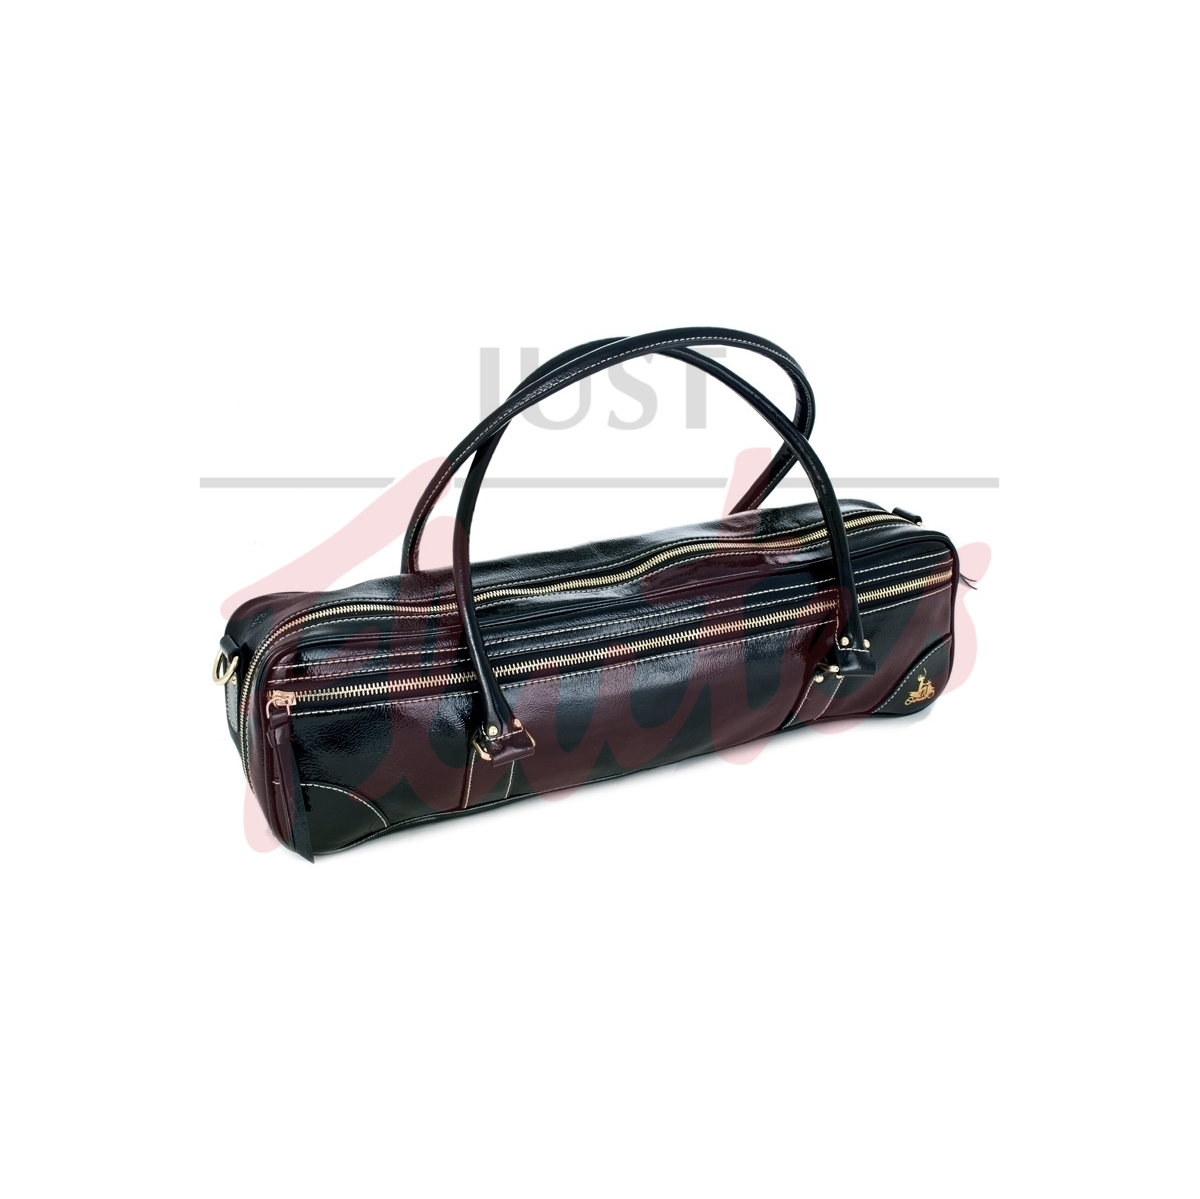 Fluterscooter Designer Flute Handbag (Black Patent Leather)